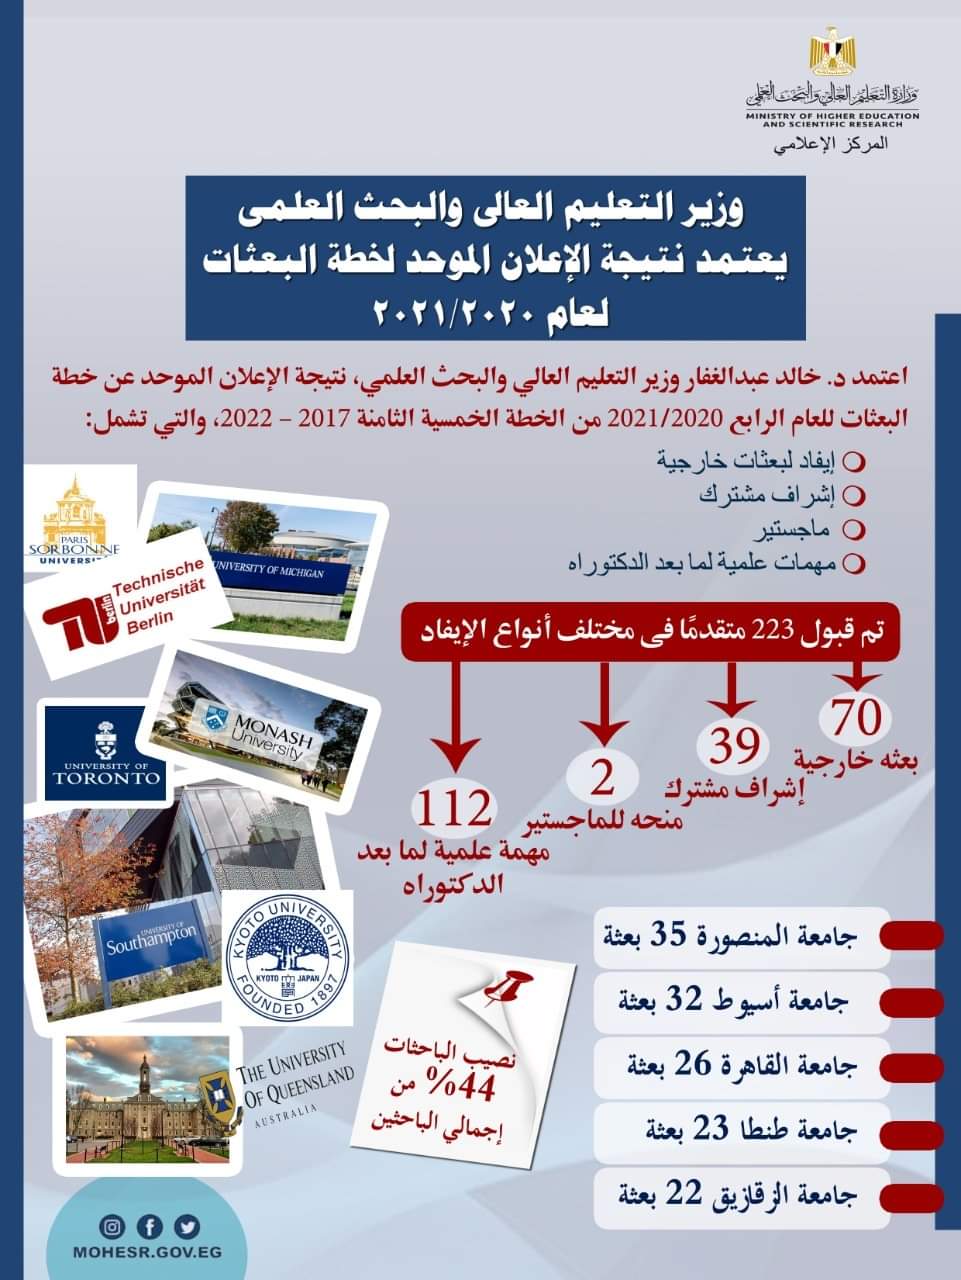 جامعة المنصورة تتصدر الجامعات المصرية في عدد البعثات